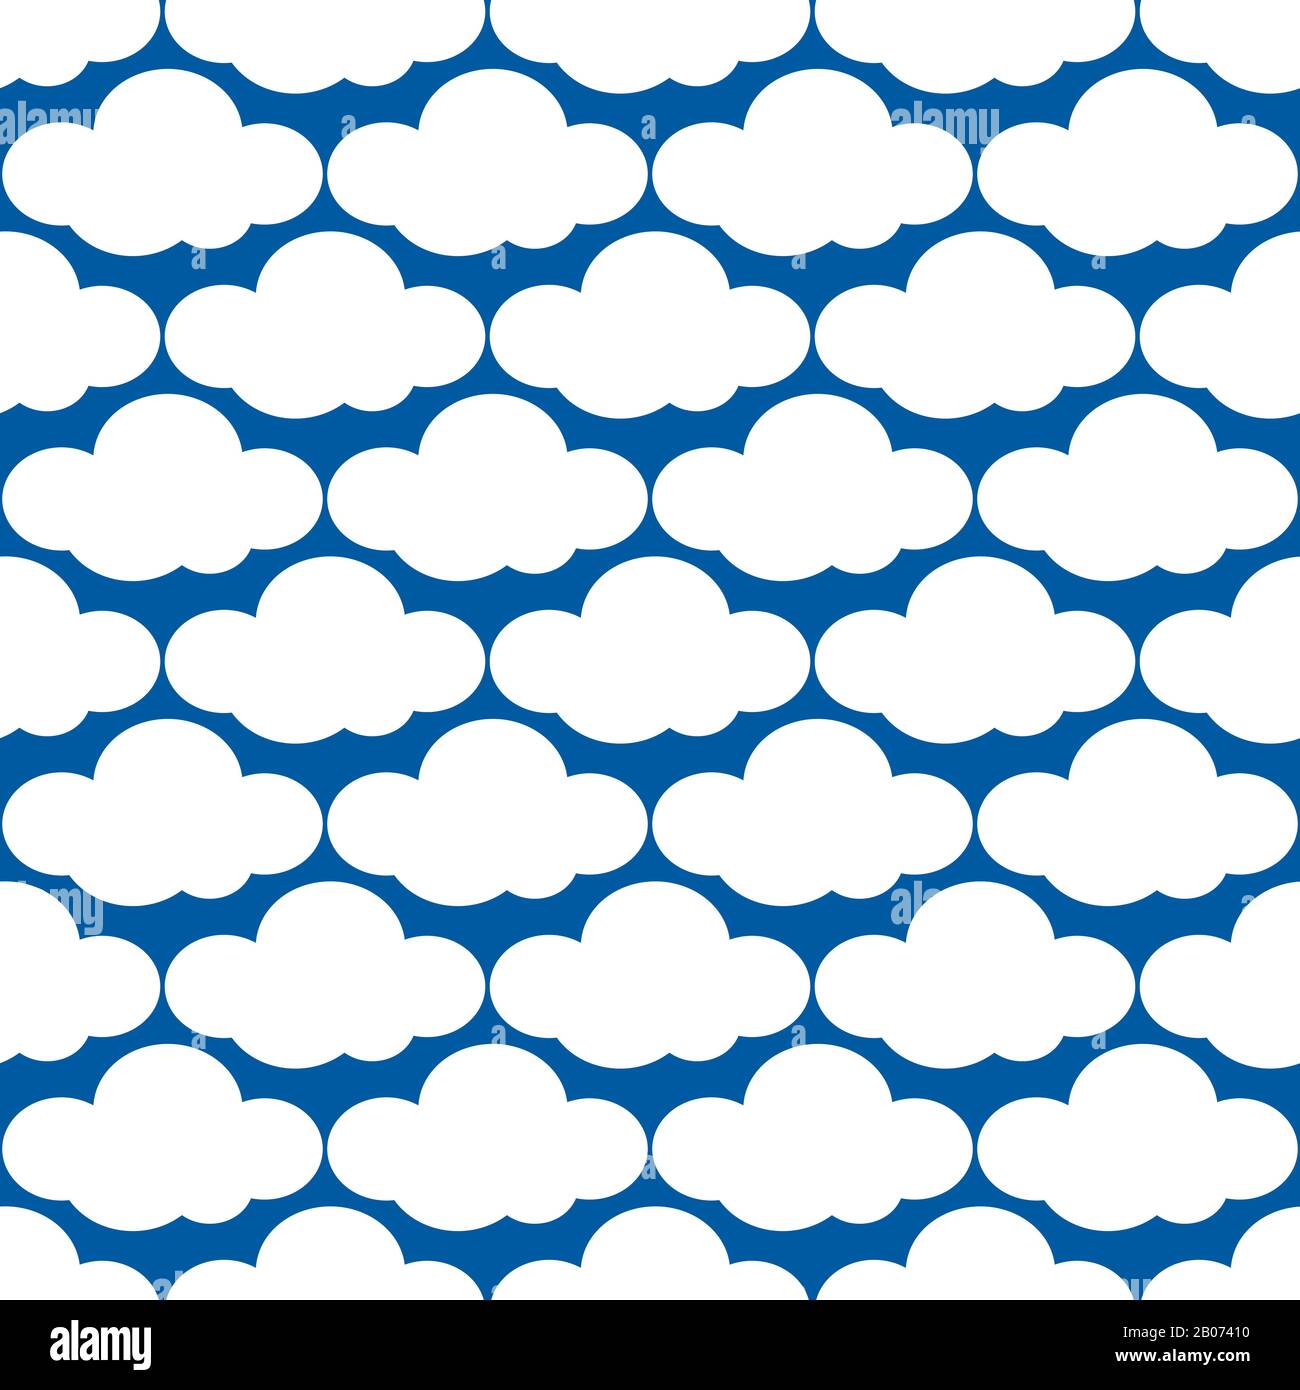 Vektorwolken wittern nahtloses Muster. Abbildung mit Überwurf und Hintergrund des Himmels Stock Vektor